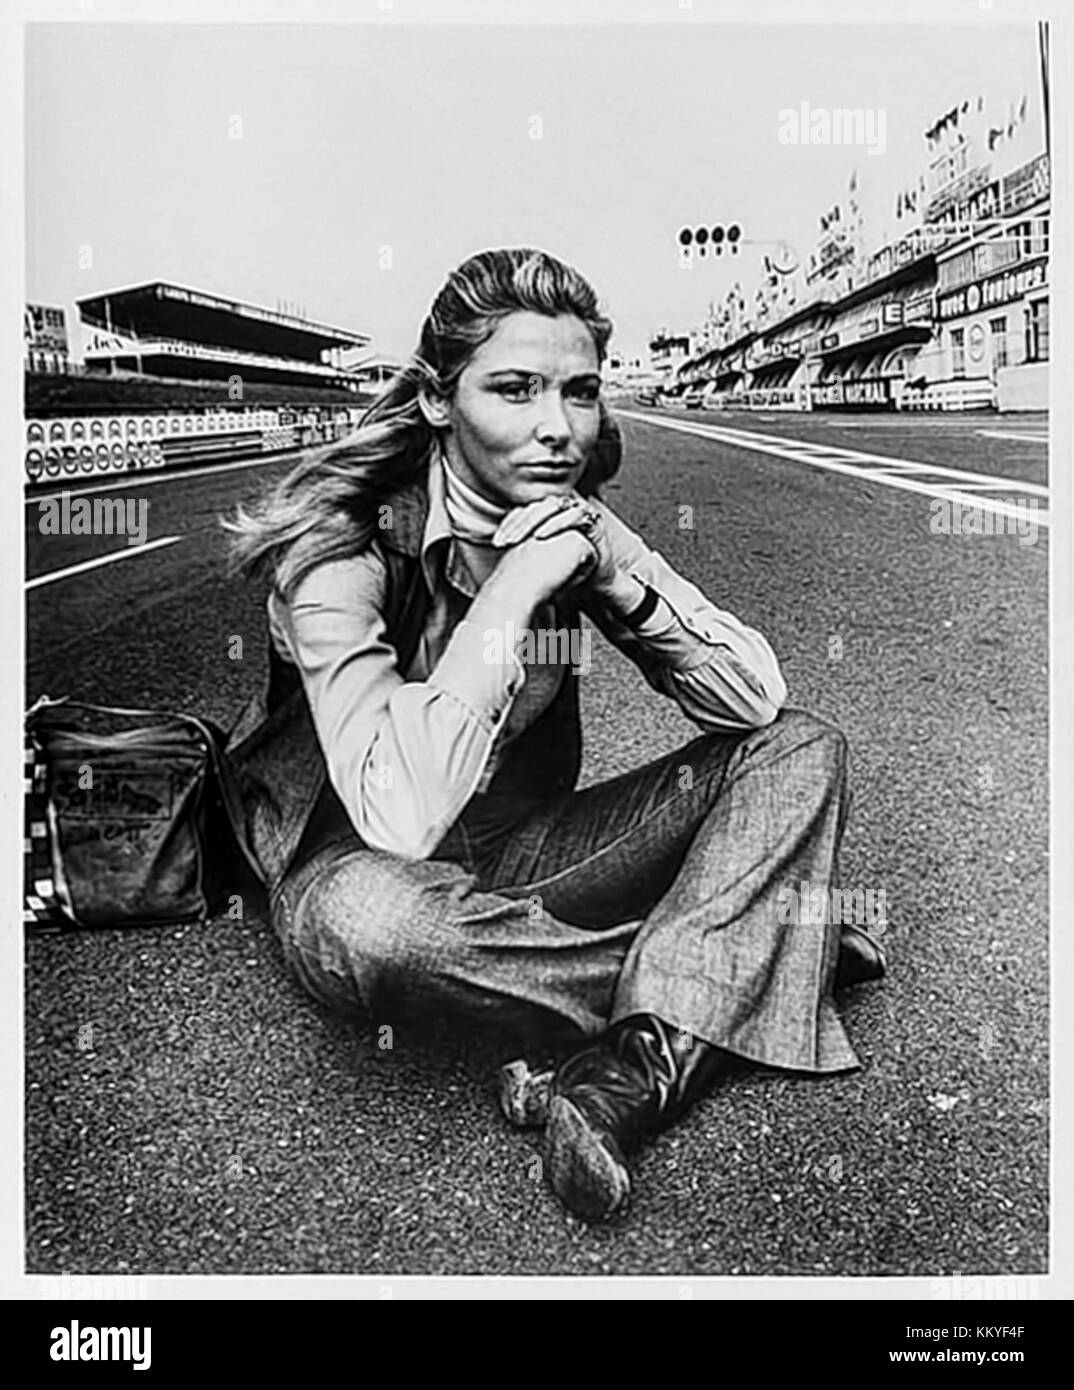 Elga Andersen als Witwe Lisa Belgetti auf dem Circuit de la Sarthe während der Dreharbeiten zu "Le Mans" (1971) unter der Regie von H. Lee Katzin und Hauptdarsteller Steve McQueen. Stockfoto